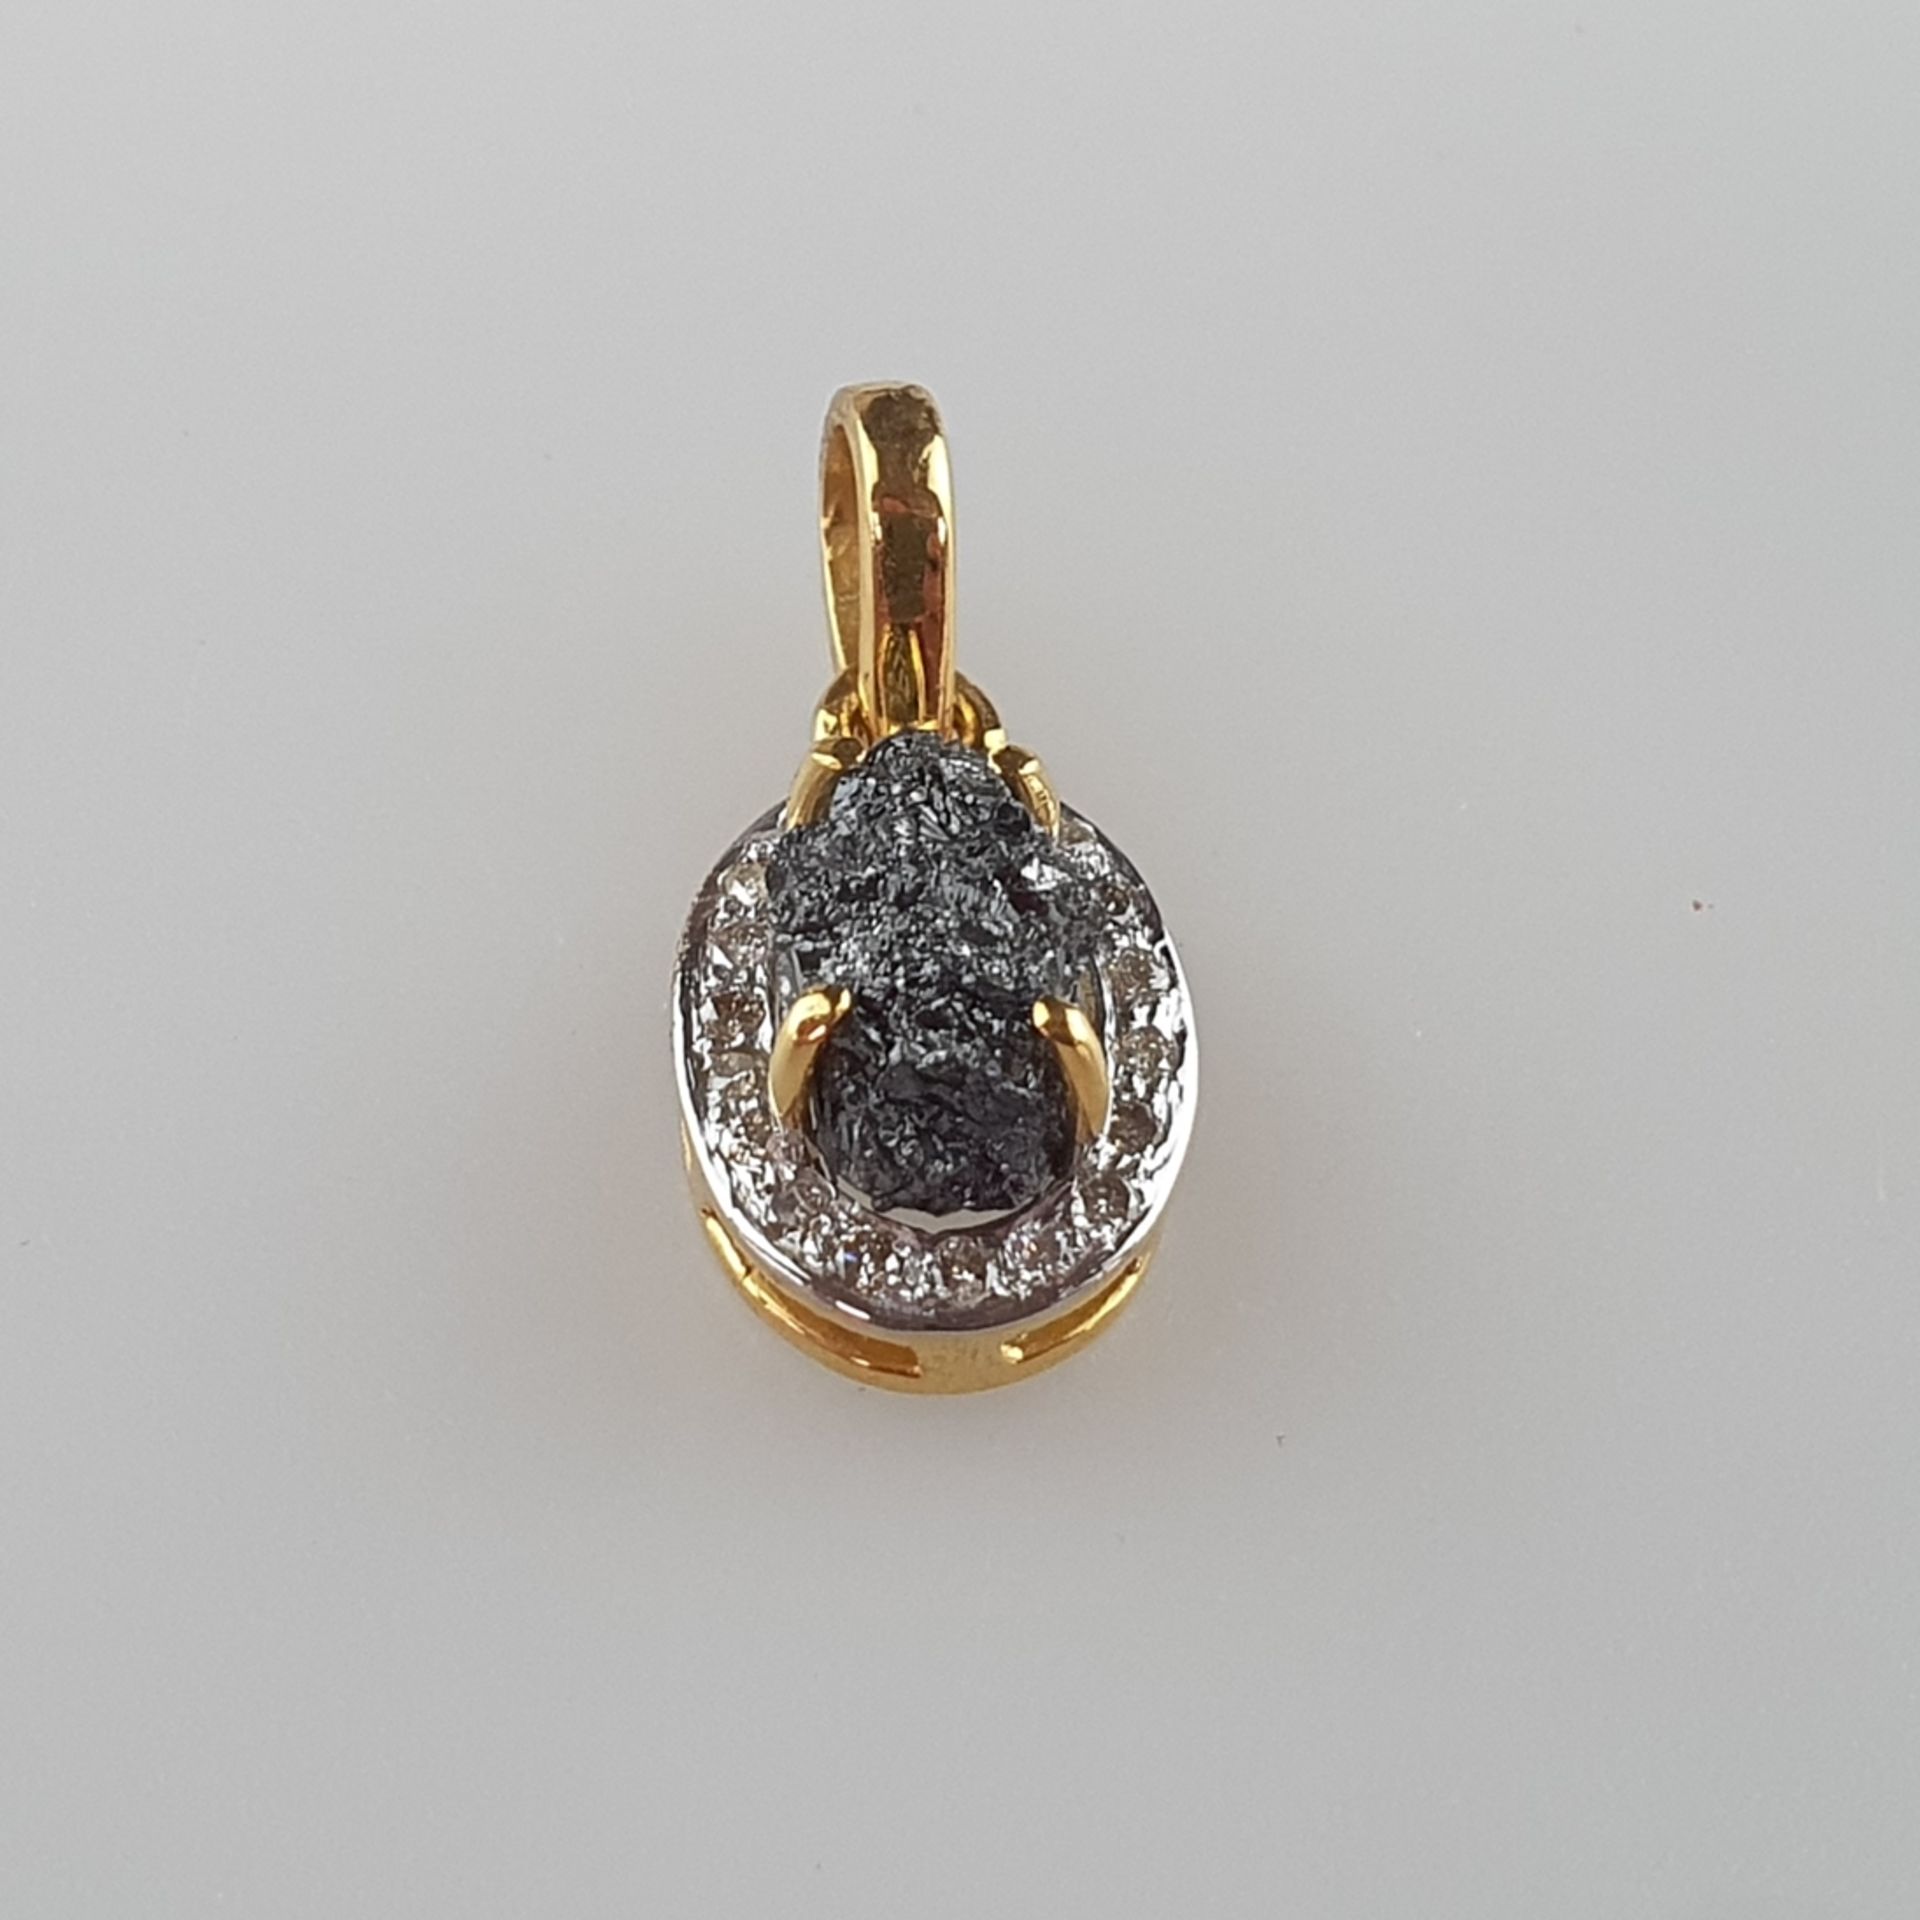 Rohdiamant-Goldanhänger - 14Kt.-Gelbgold 585/000, gestempelt, Gewicht/Farbe Rohdiamant 4,11 ct./bra - Image 2 of 5